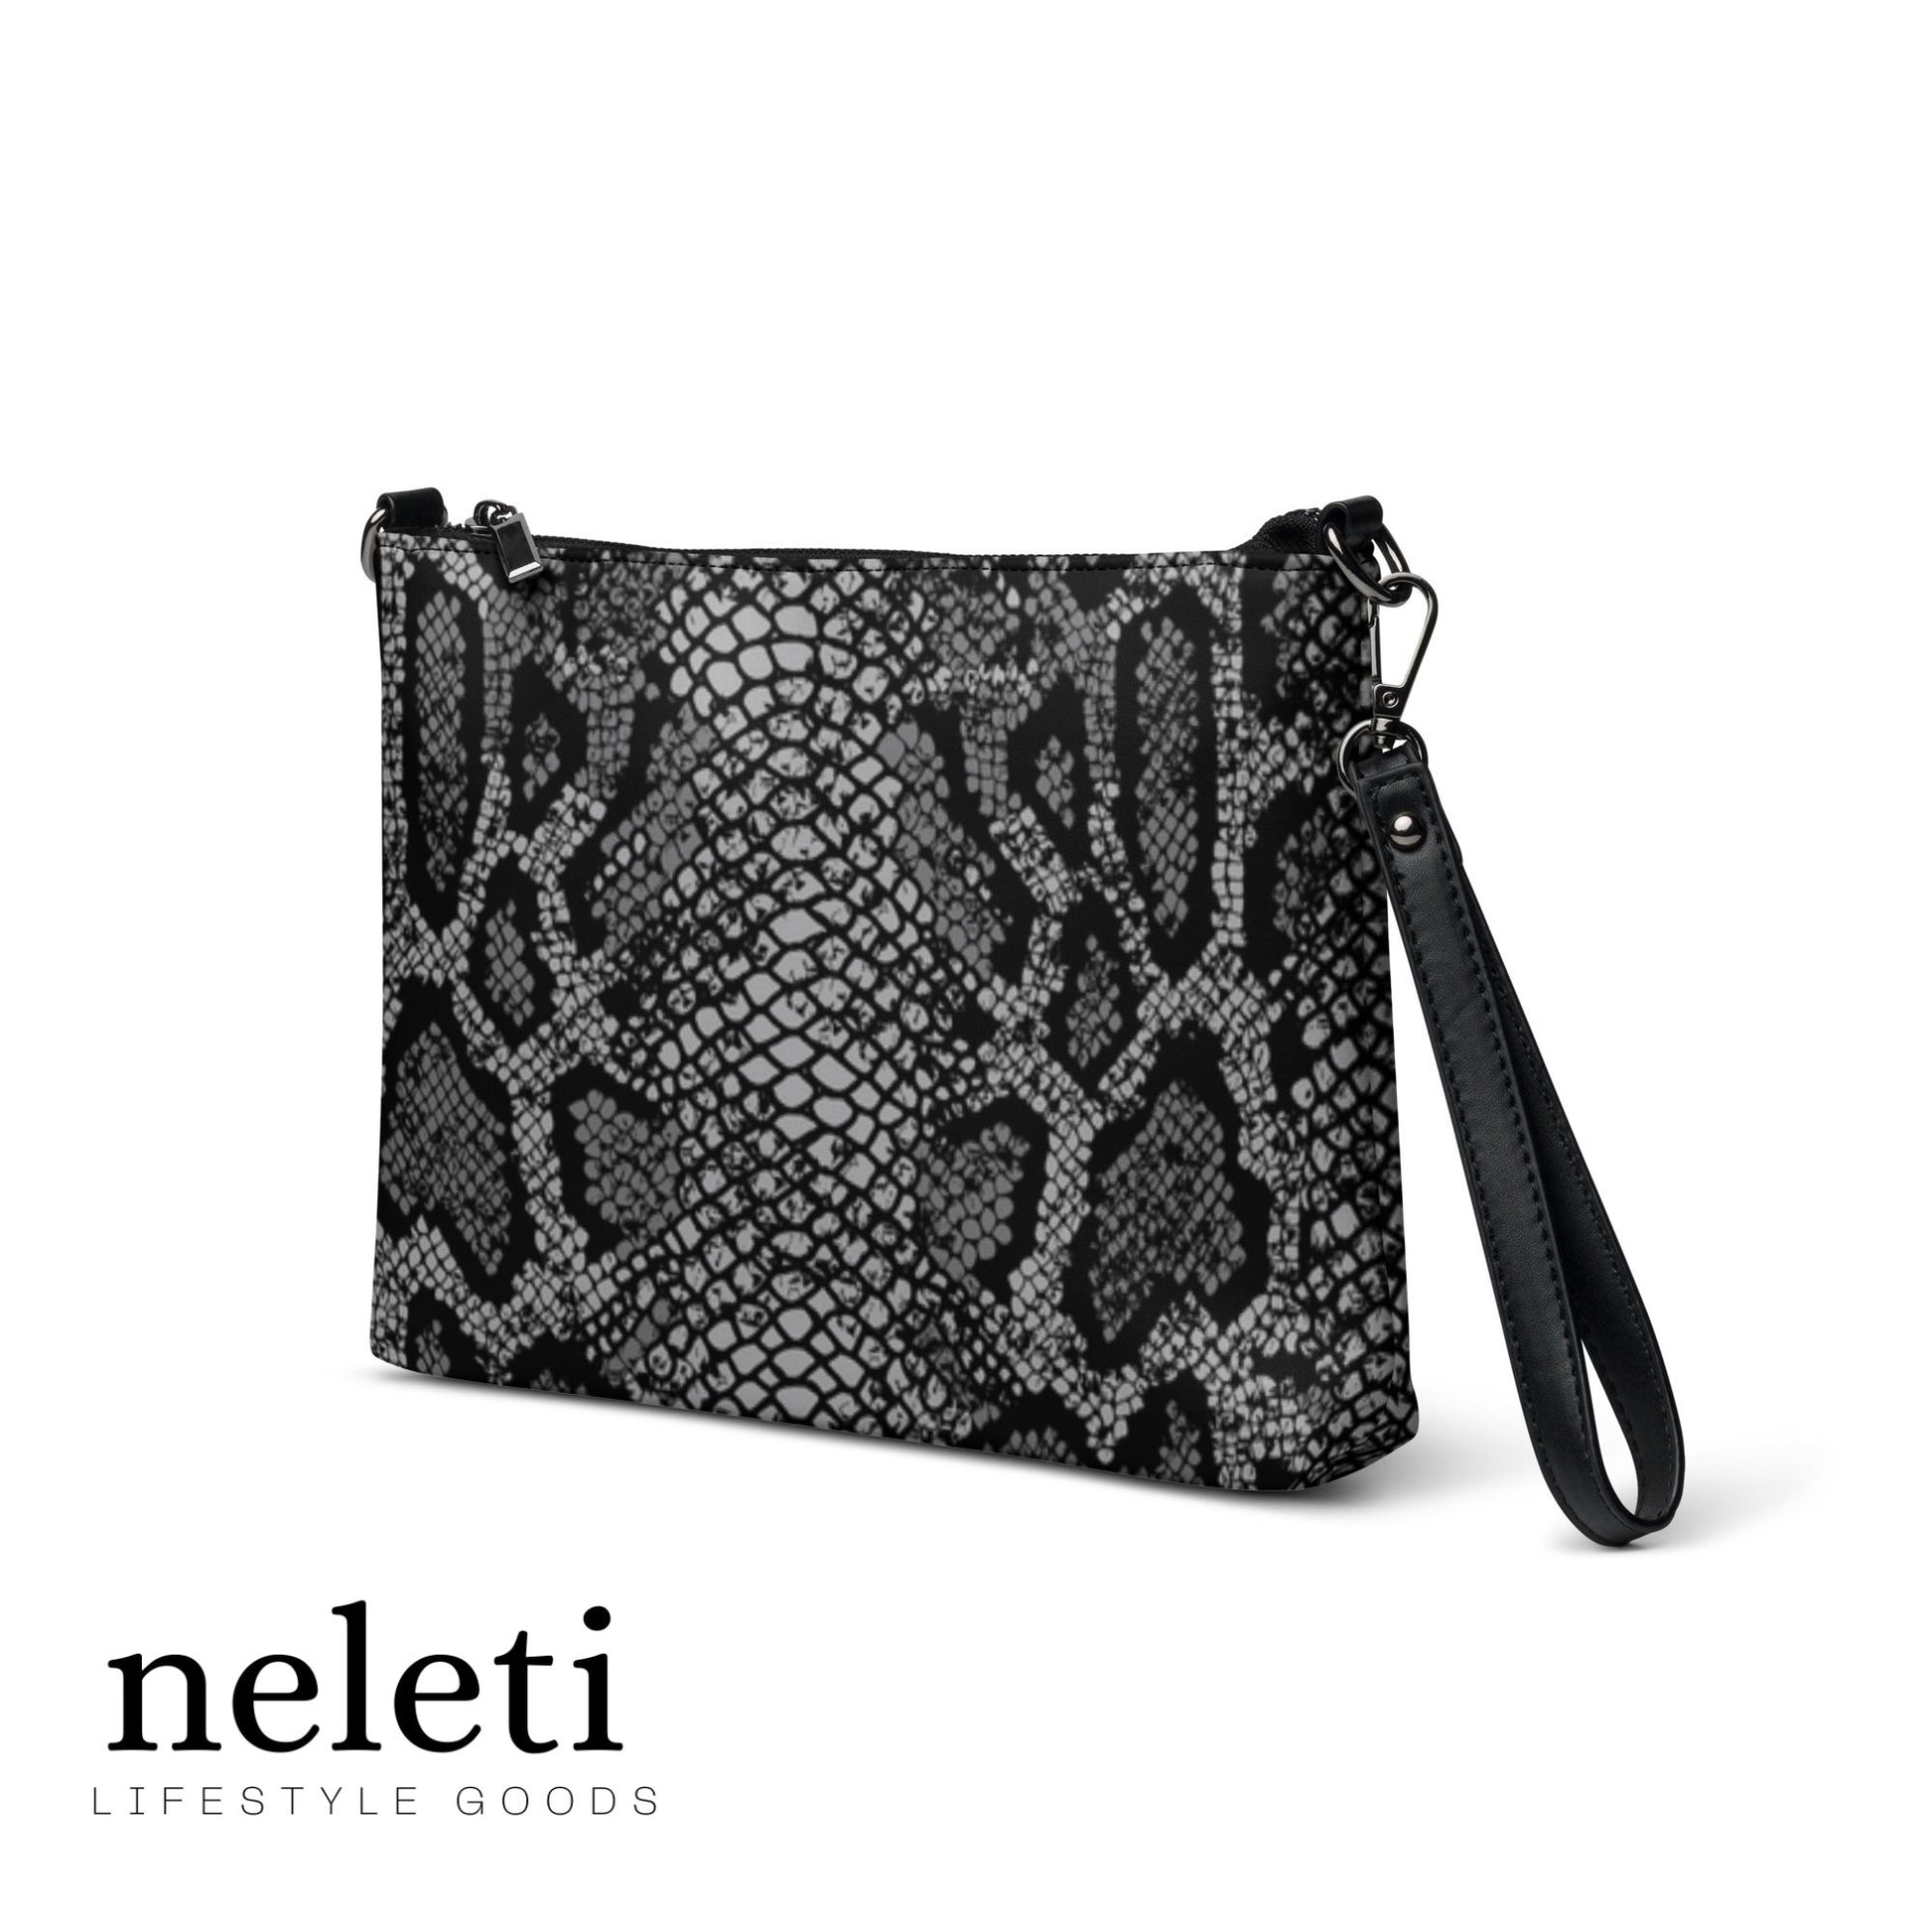 neleti.com-women-crossbody-bag